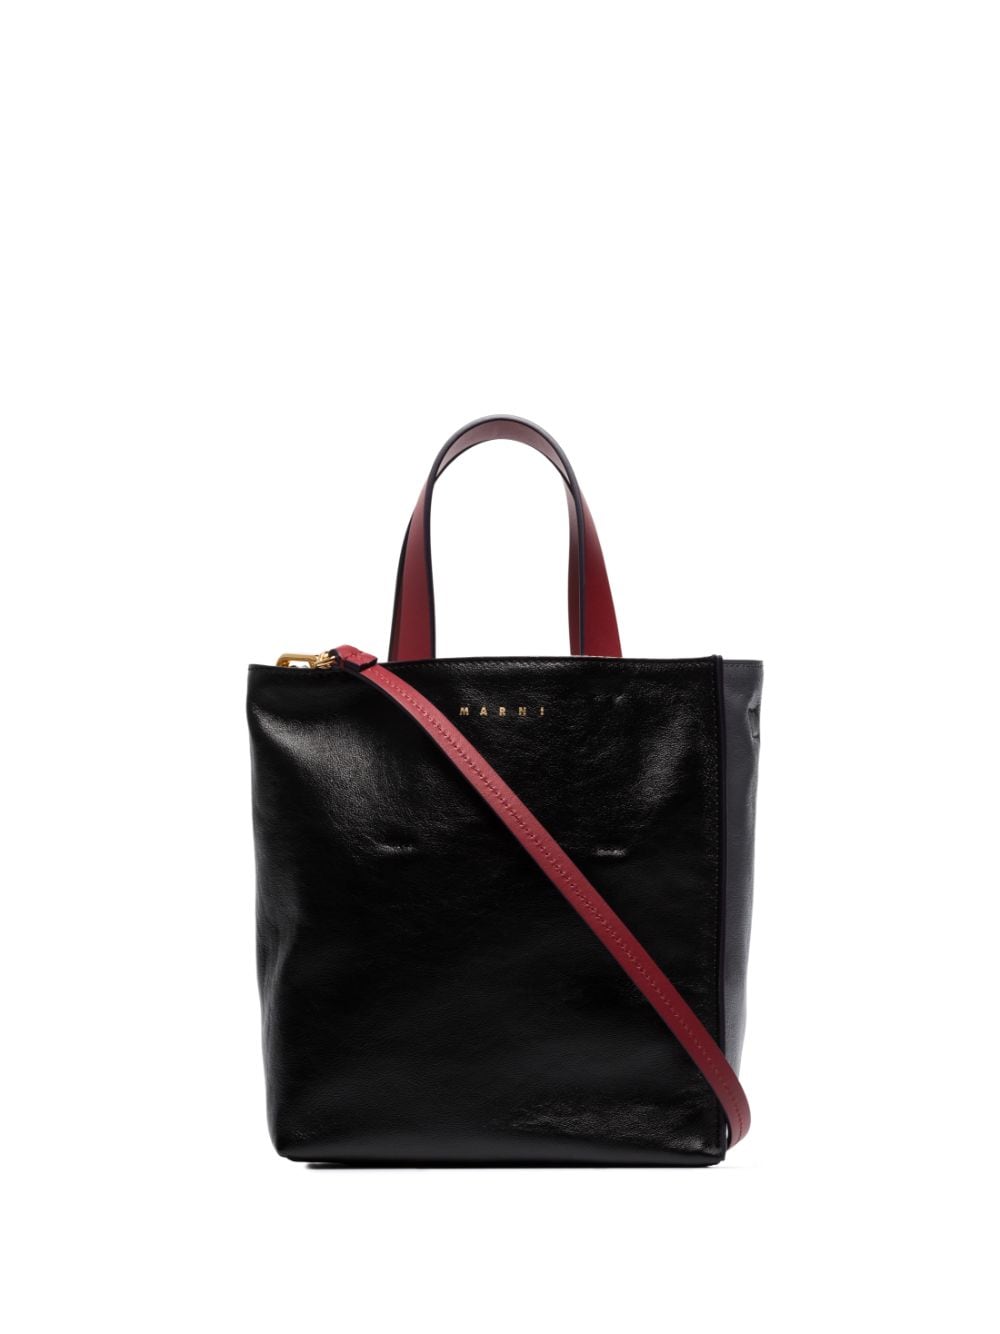 Marni Museo leather tote bag - Black von Marni